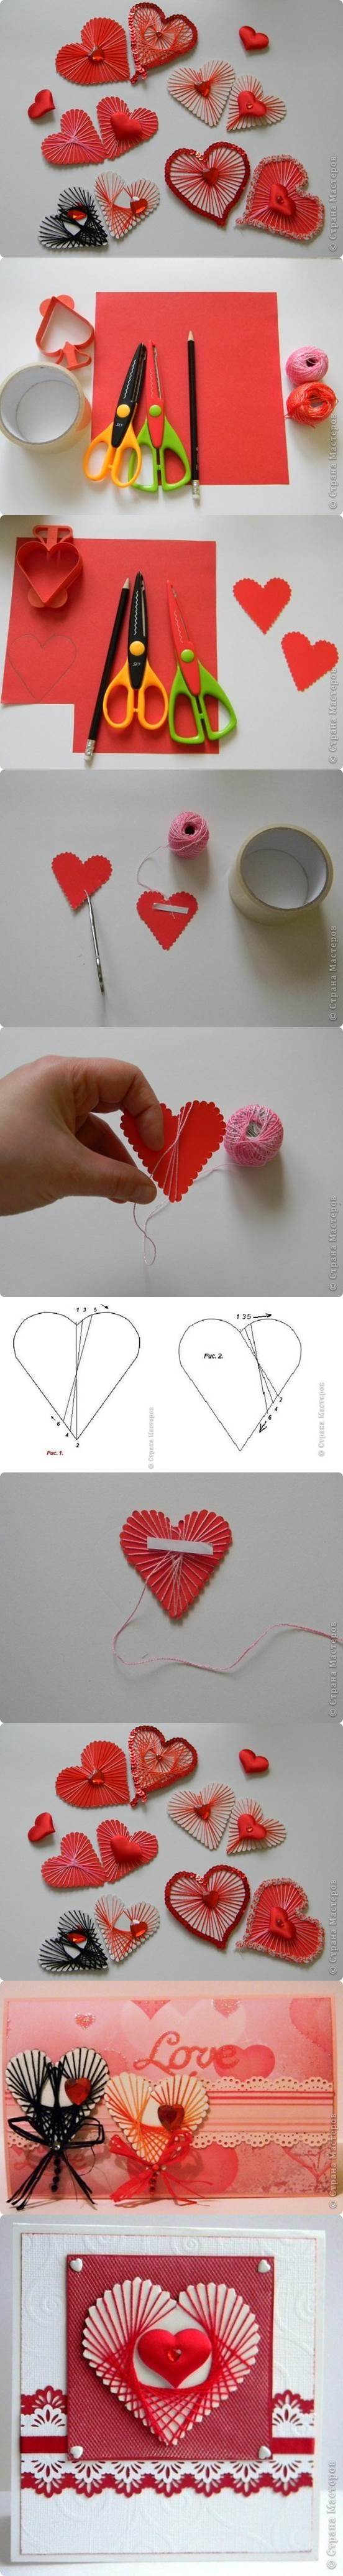 DIY Unique Yarn Heart Decoration 2